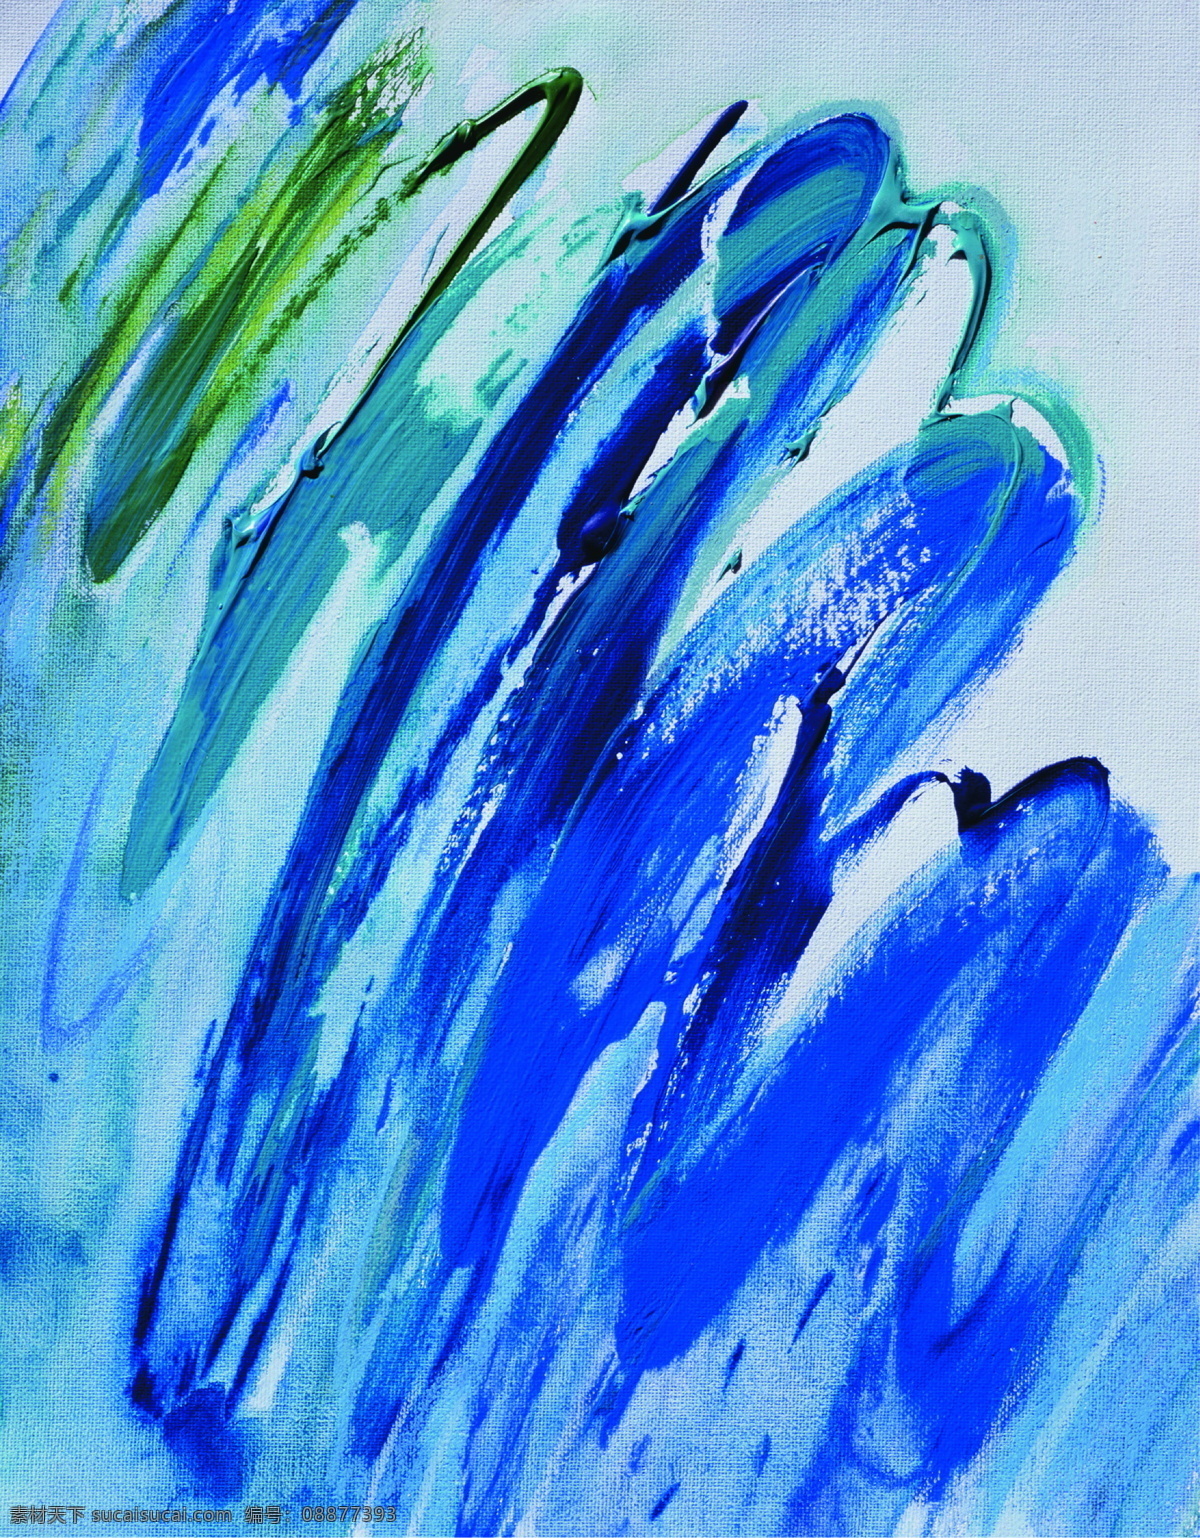 彩色 抽象油画 丰富 高清 个性 绘画书法 蓝色 抽象 油画 设计素材 模板下载 高清抽象油画 艺术 艺术画 艺术品 文化艺术 家居装饰素材